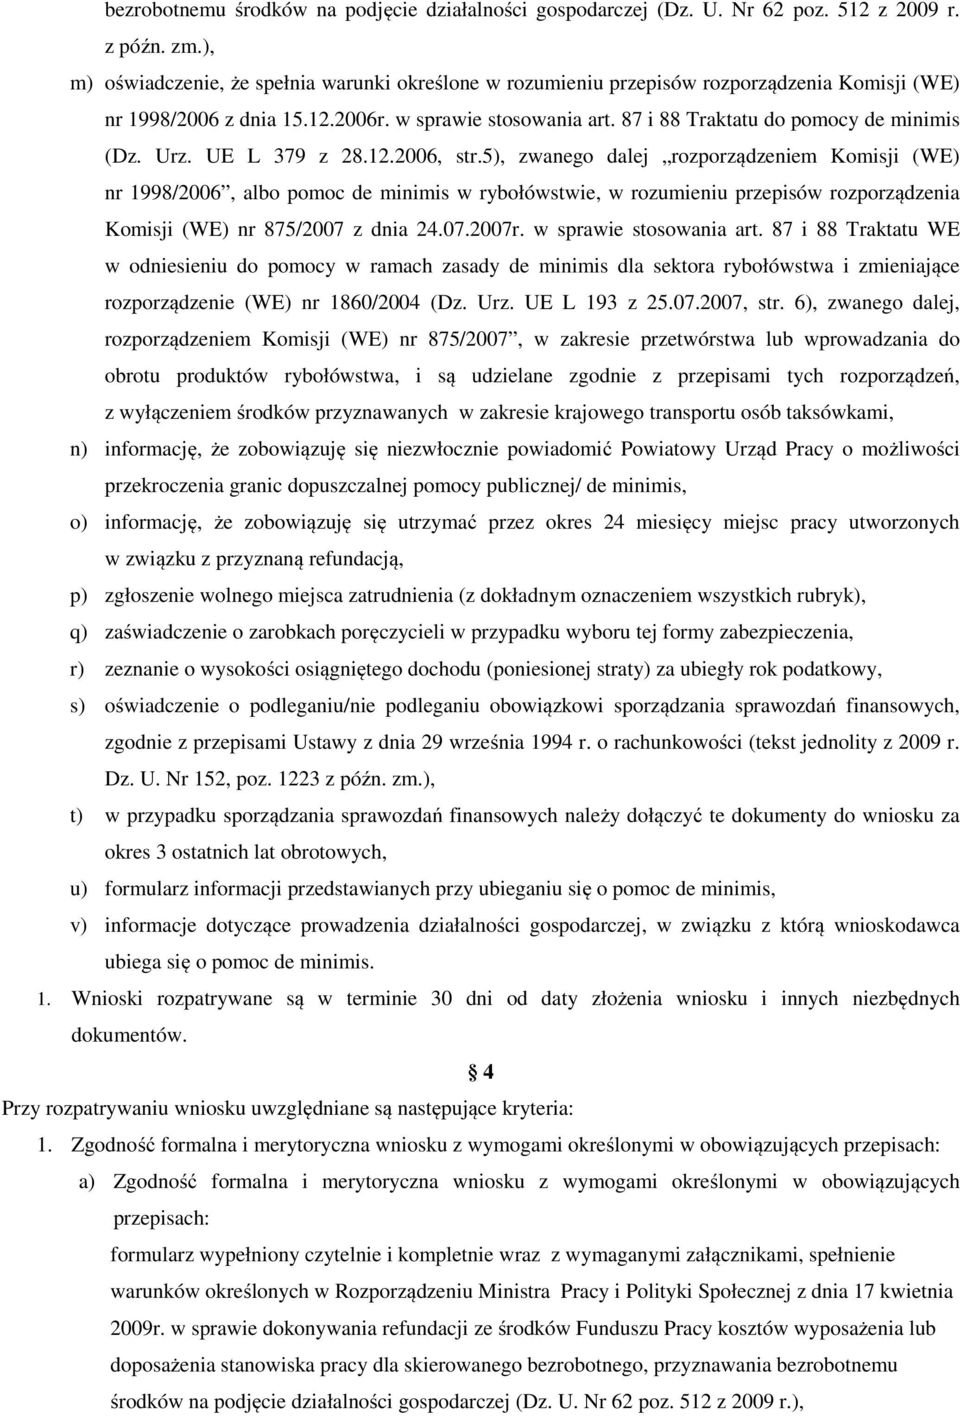 87 i 88 Traktatu do pomocy de minimis (Dz. Urz. UE L 379 z 28.12.2006, str.